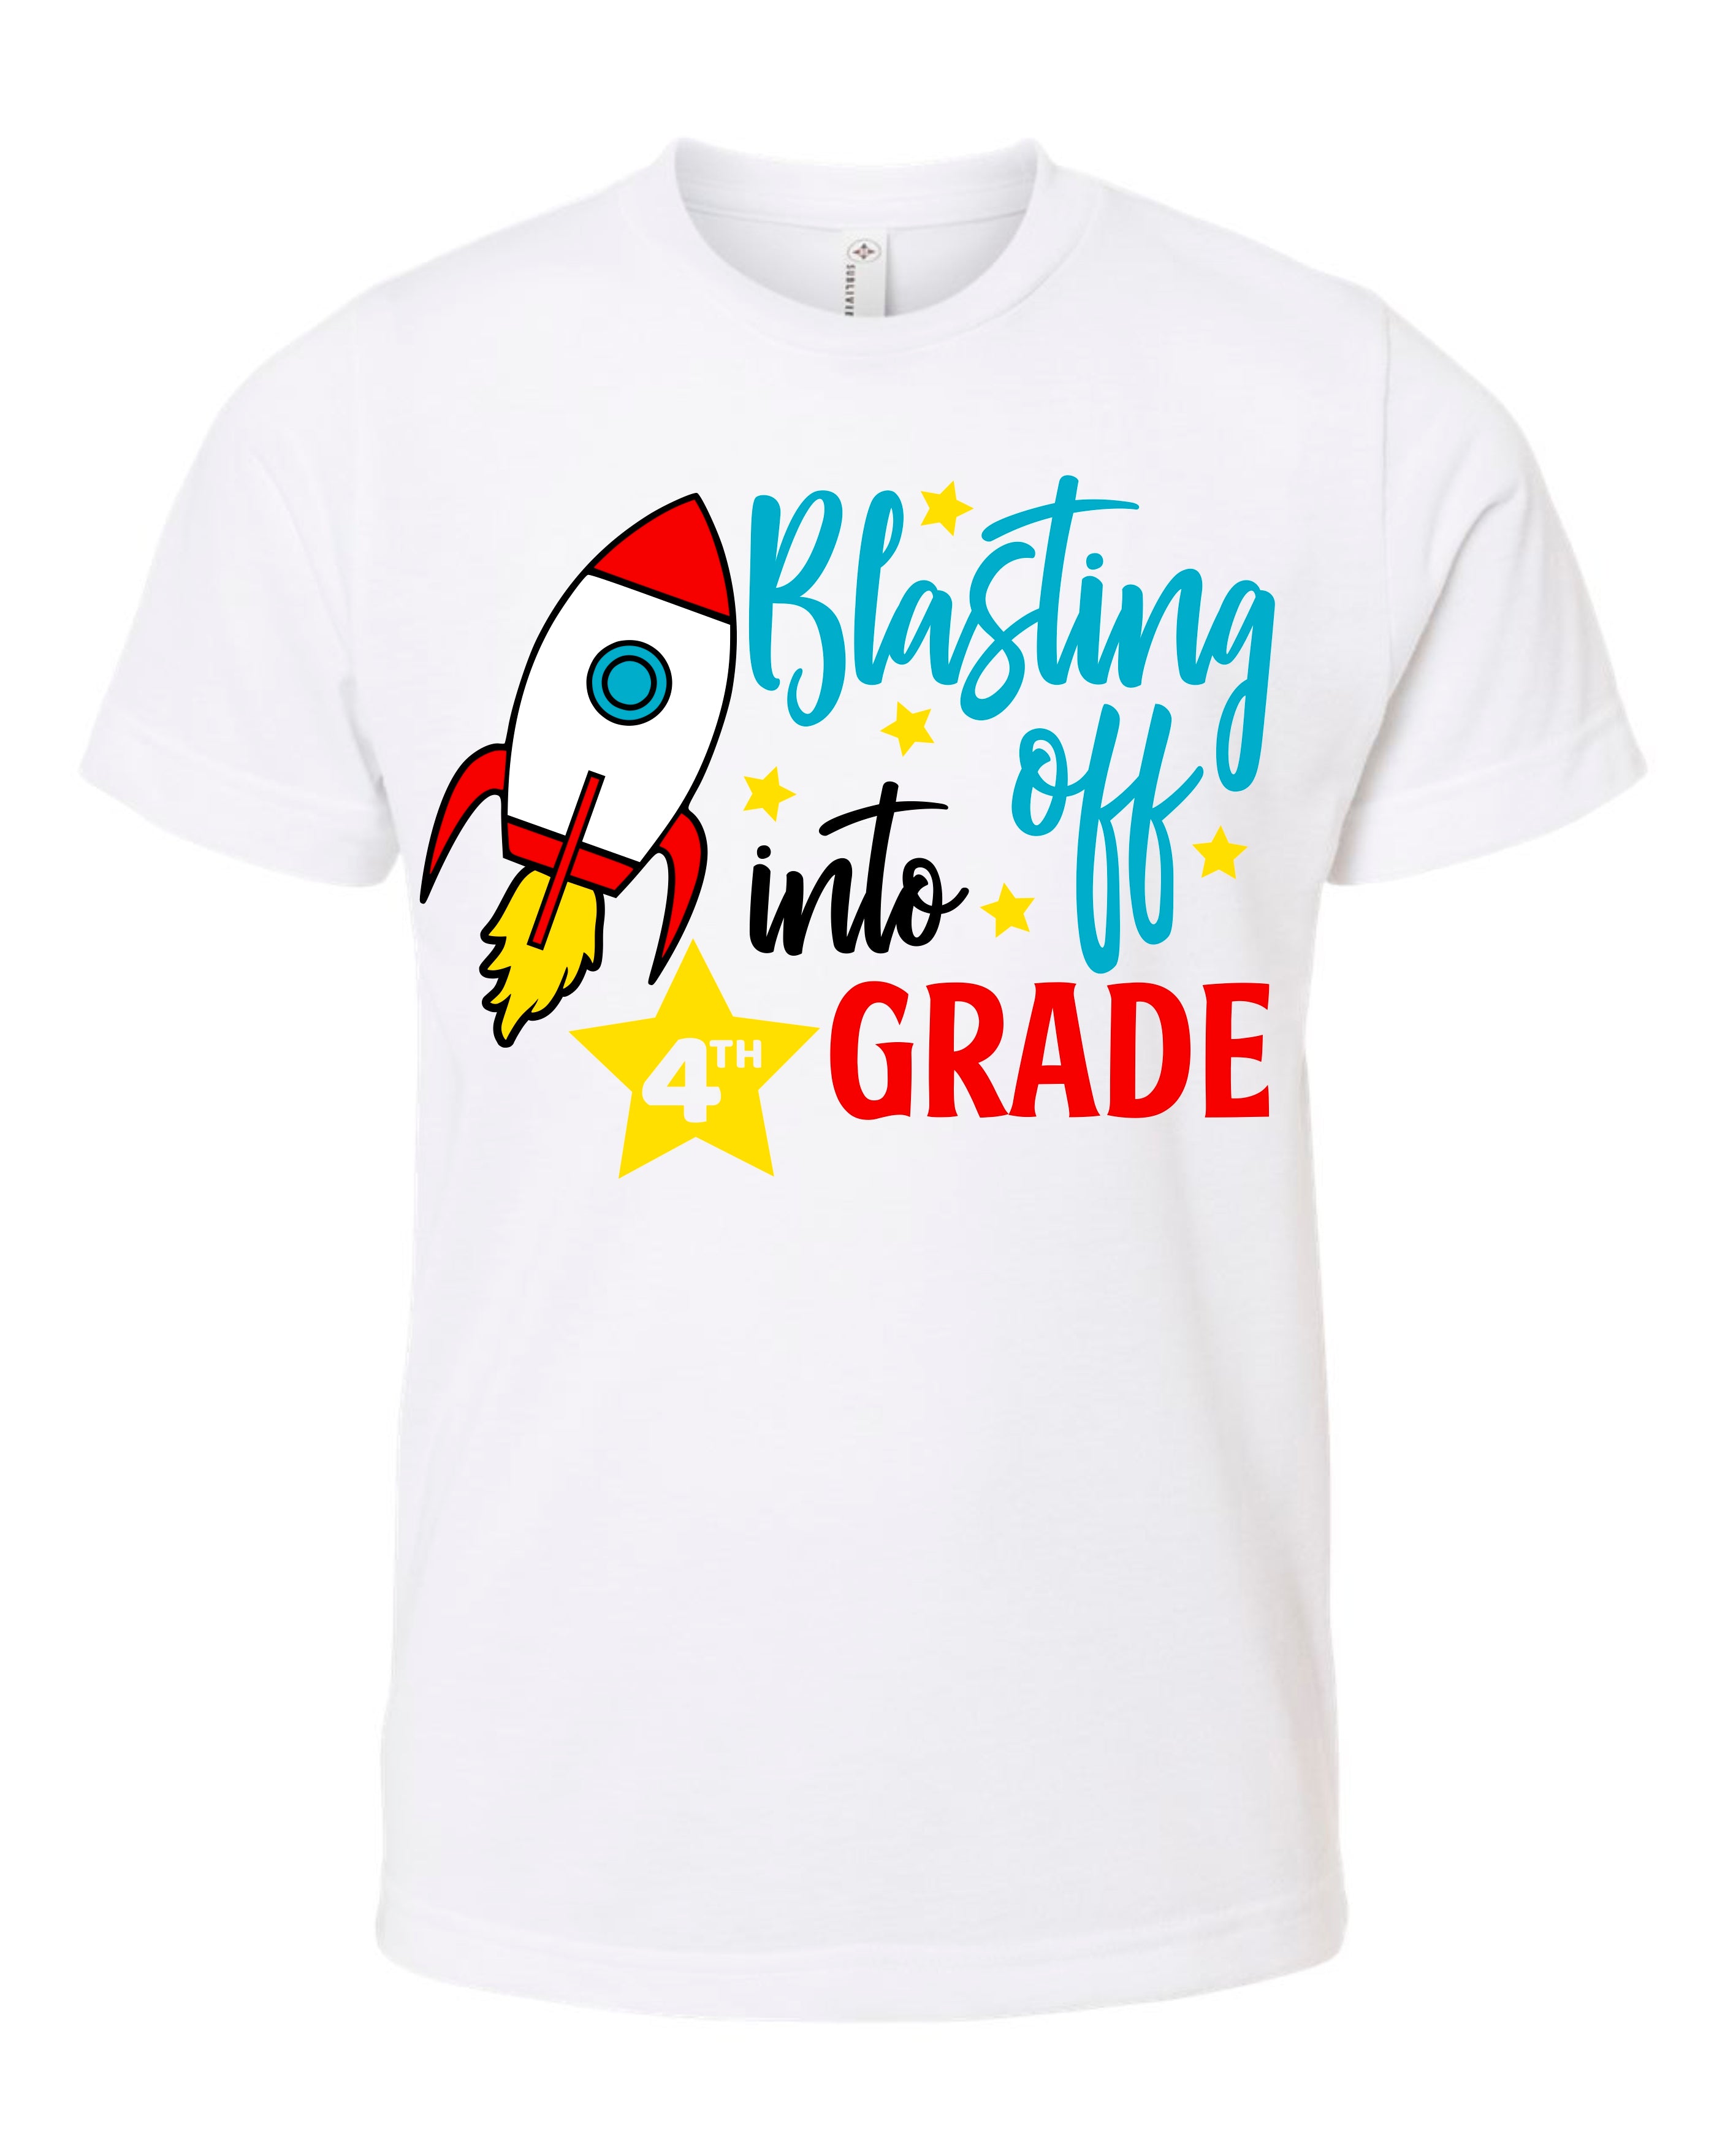 Blast Off Grade Shirt, K-4th